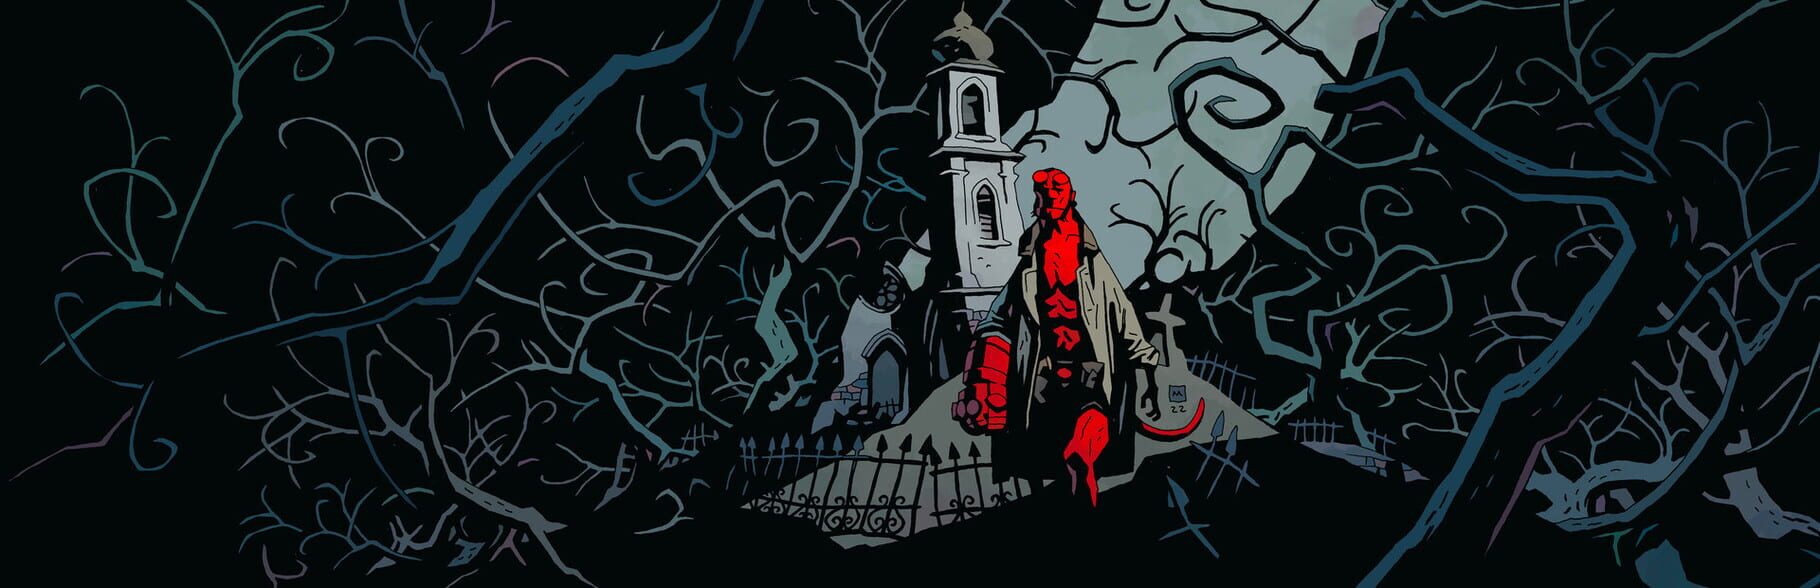 Arte - Hellboy: Web of Wyrd